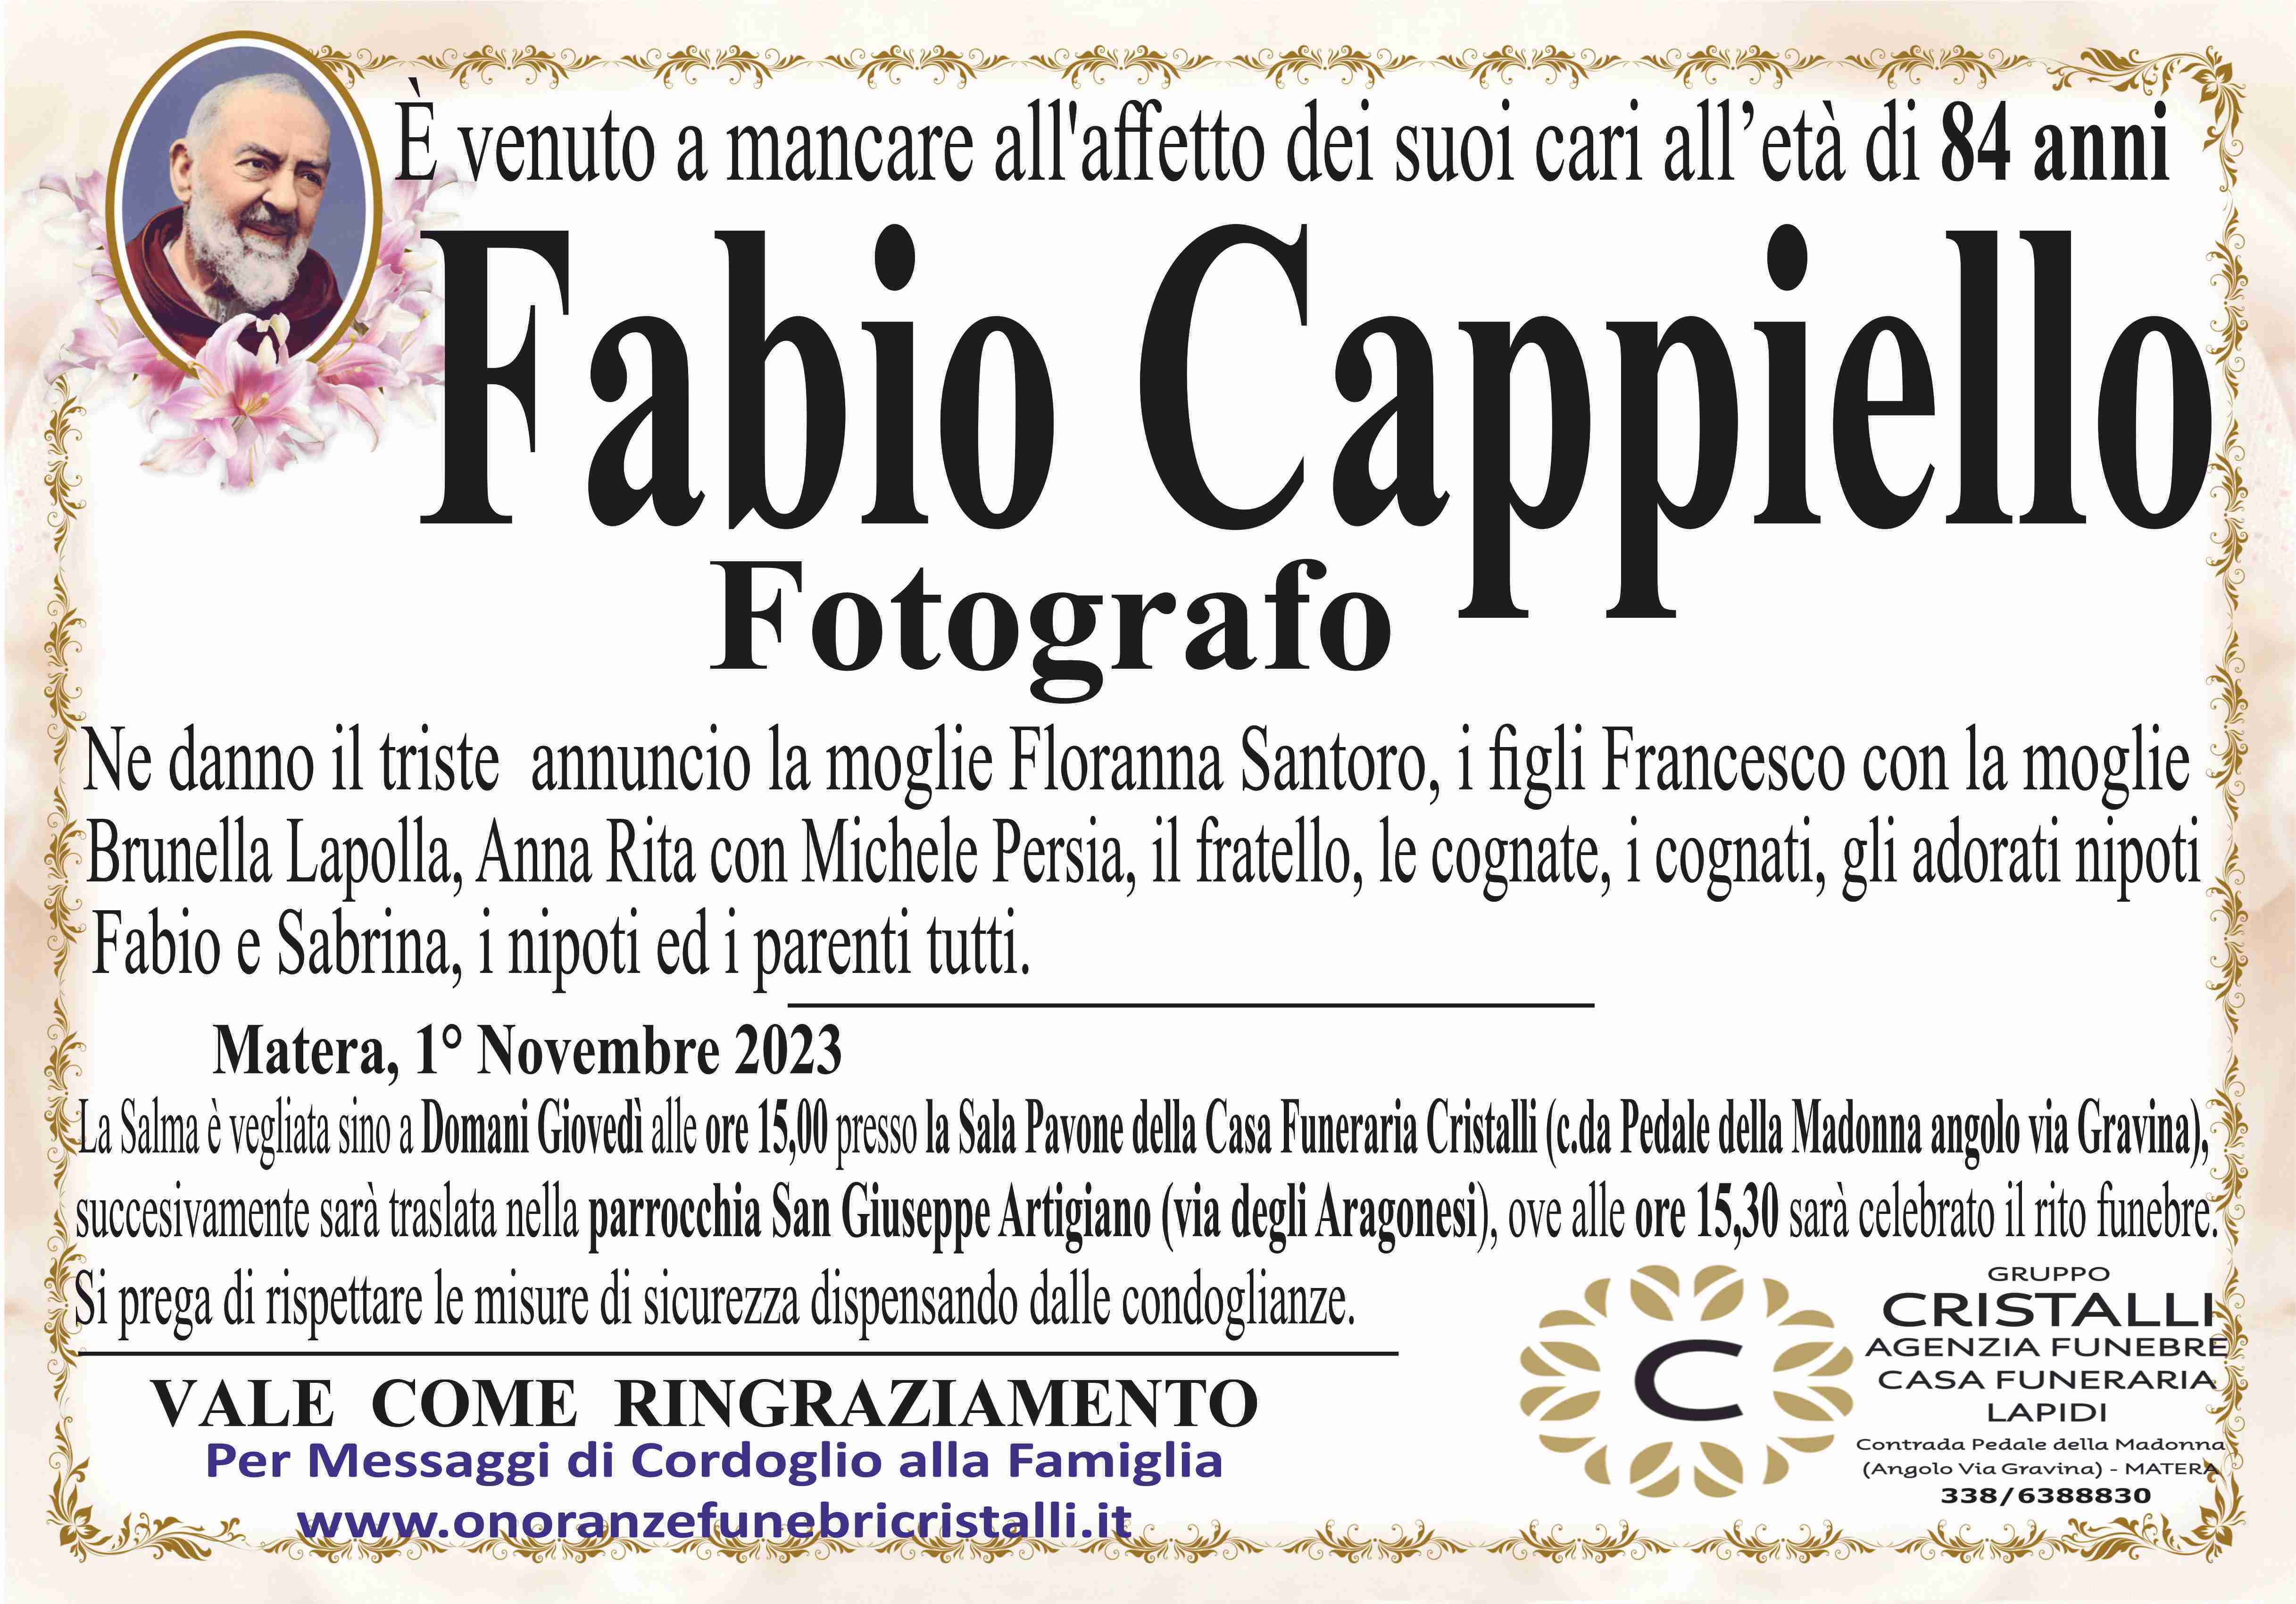 Fabio Cappiello